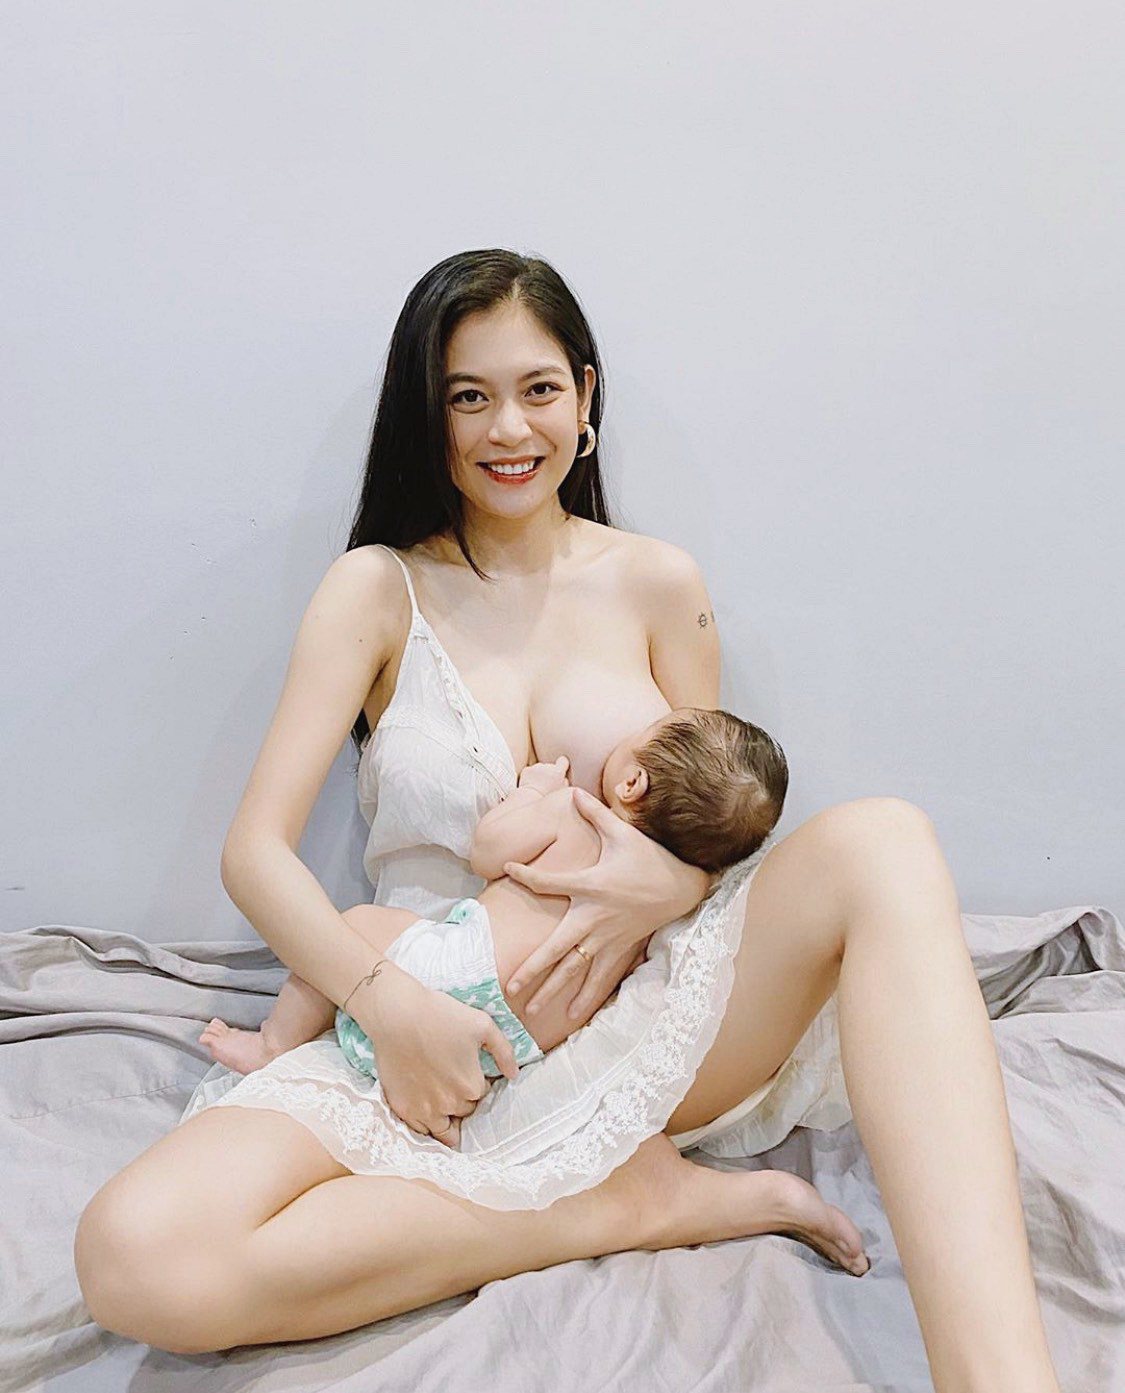 Hớ hênh lộ cả bầu ngực nhưng 3 hotgirl Việt được khen hết lời vì cho con bú quá đẹp - 4